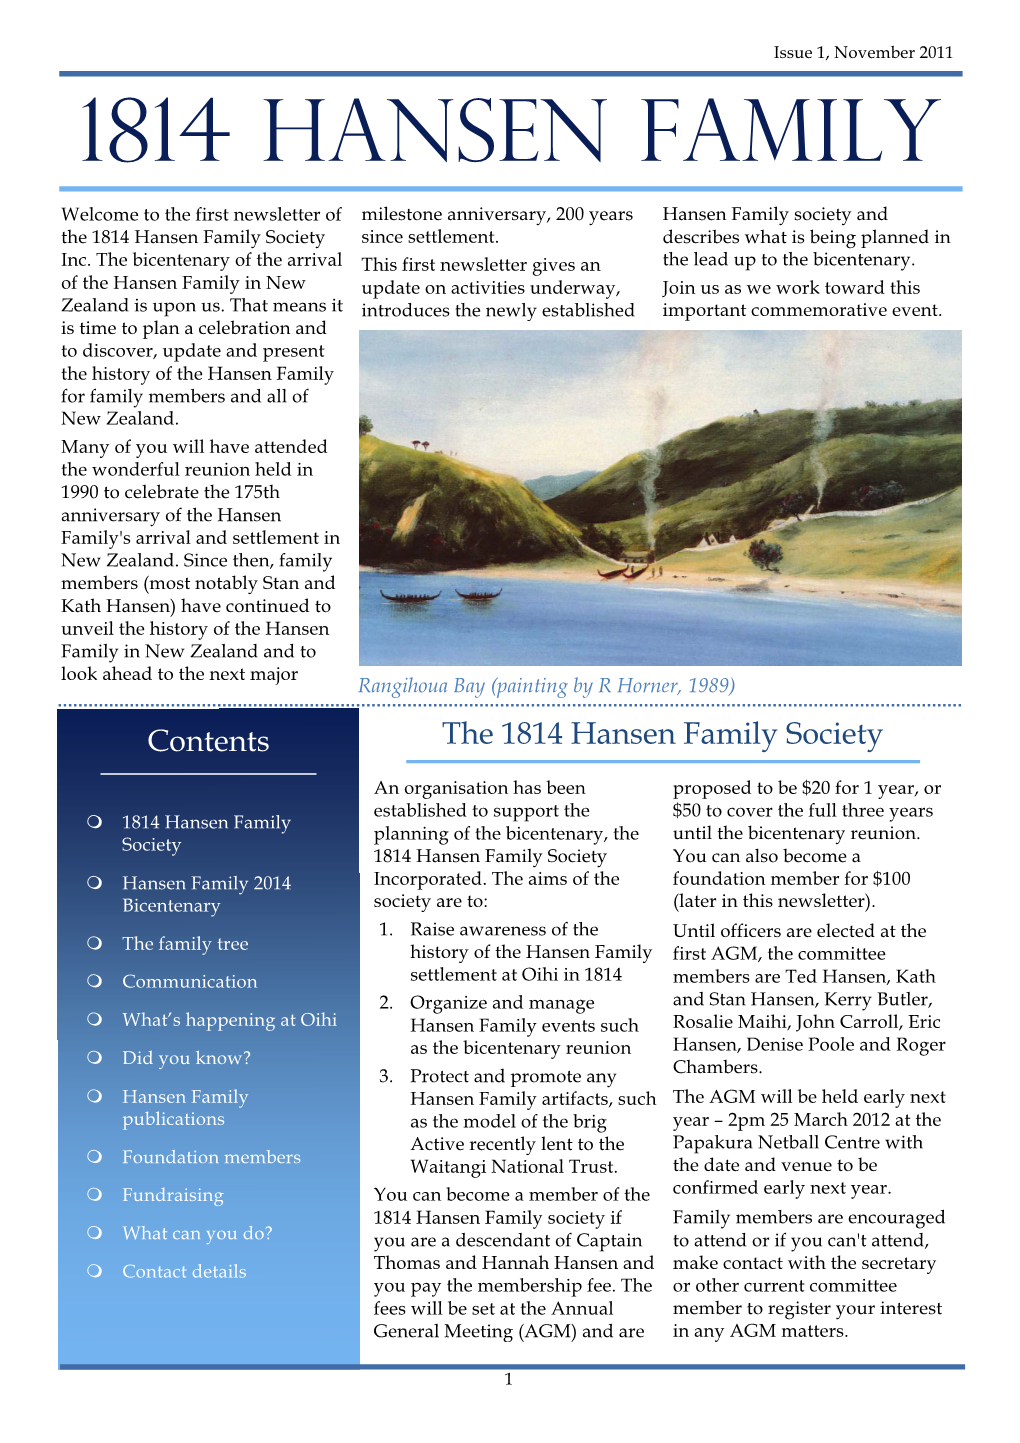 201111 1814 Hansen Family Newsletter 1 FINAL Corrected